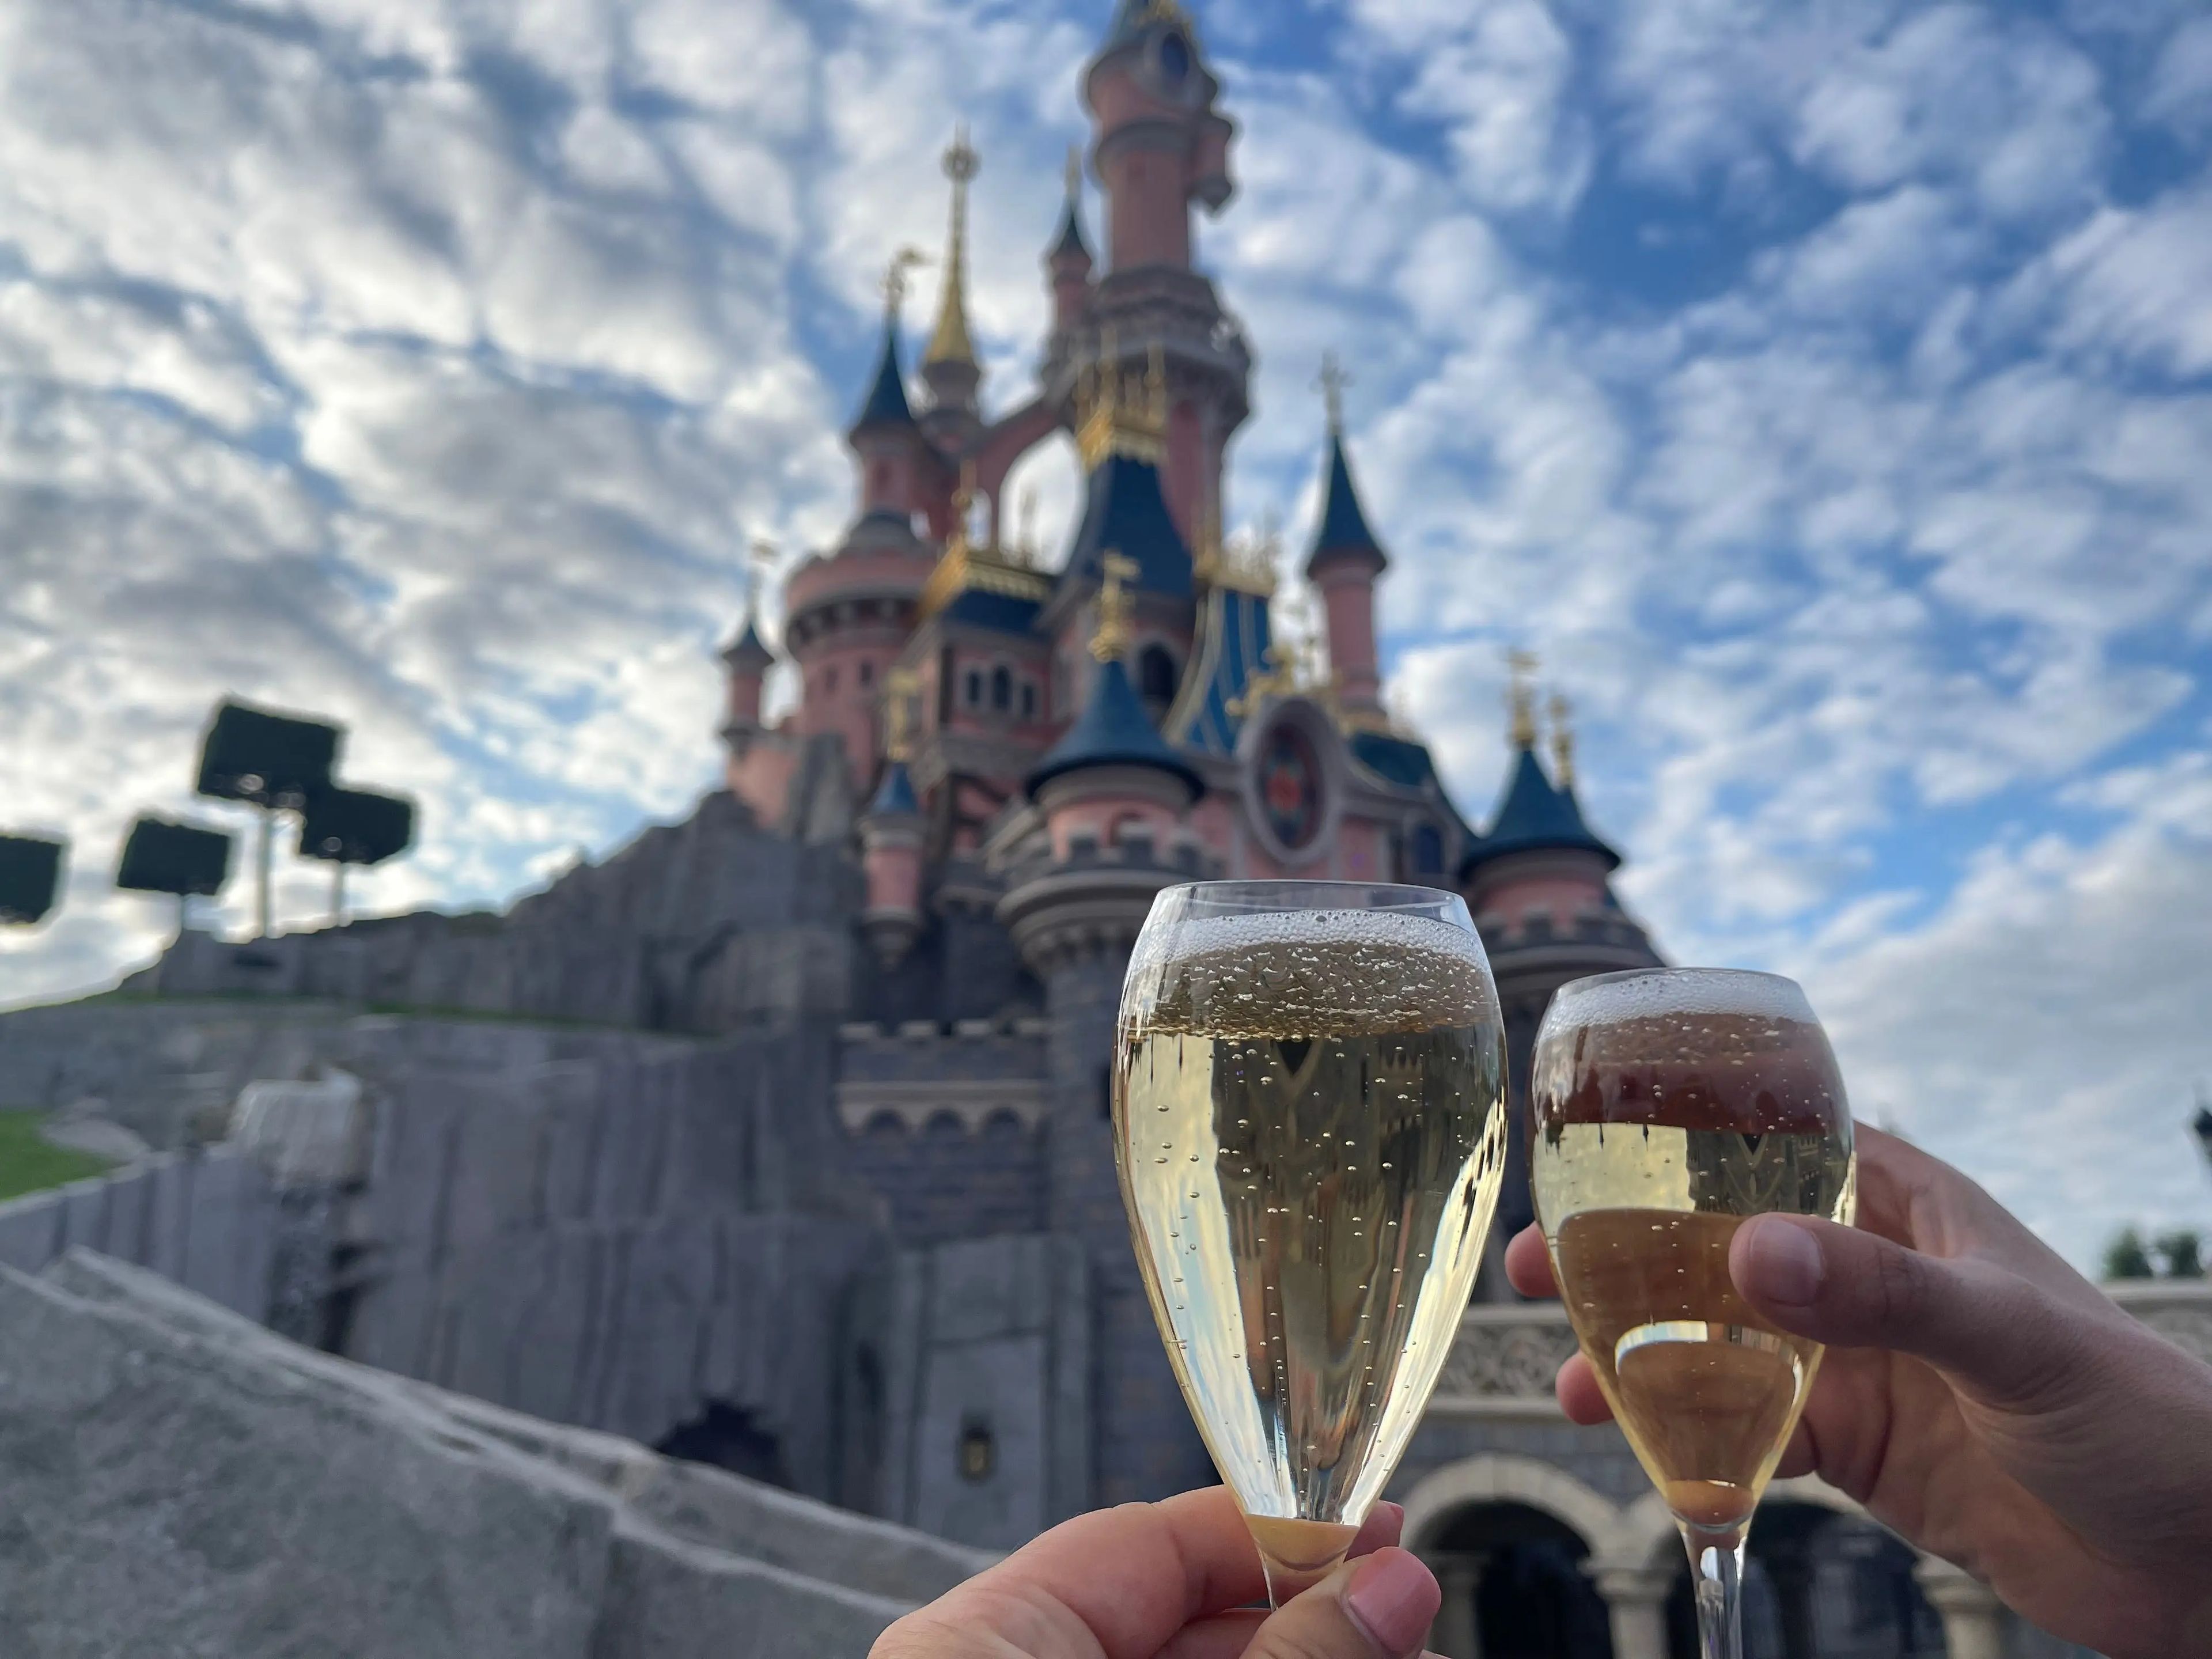 Brindando con champan enfrente del castillo de Disney.